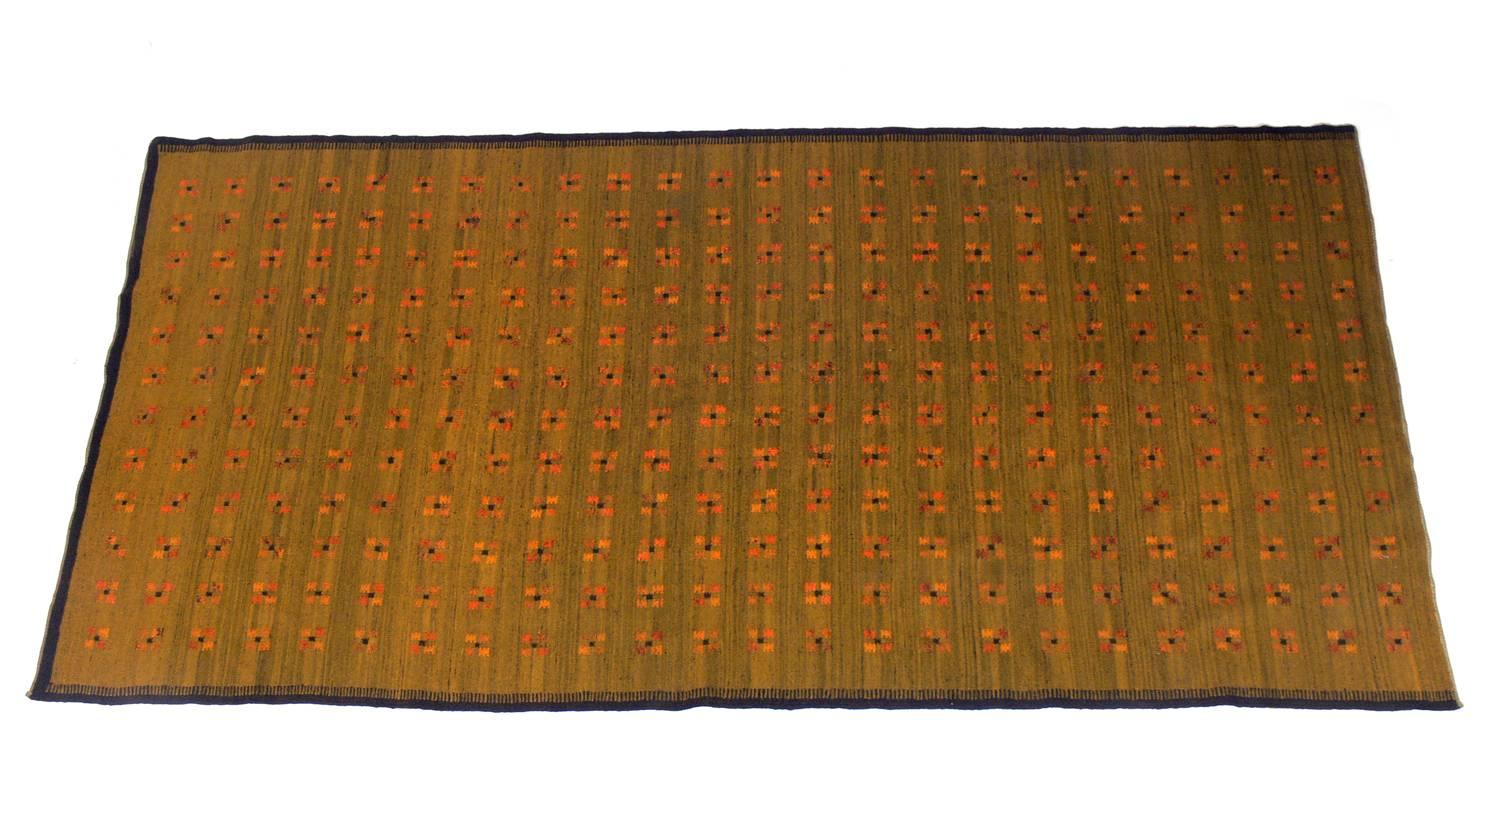 Dänischer moderner Flachgewebeteppich, wahrscheinlich schwedisch, um 1950. Schönes dichtes Gewebe mit einem schönen Muster in Goldrutegelb auf grünem Feld. Dieser Teppich hat eine beeindruckende Größe von 10,5' x 5'.